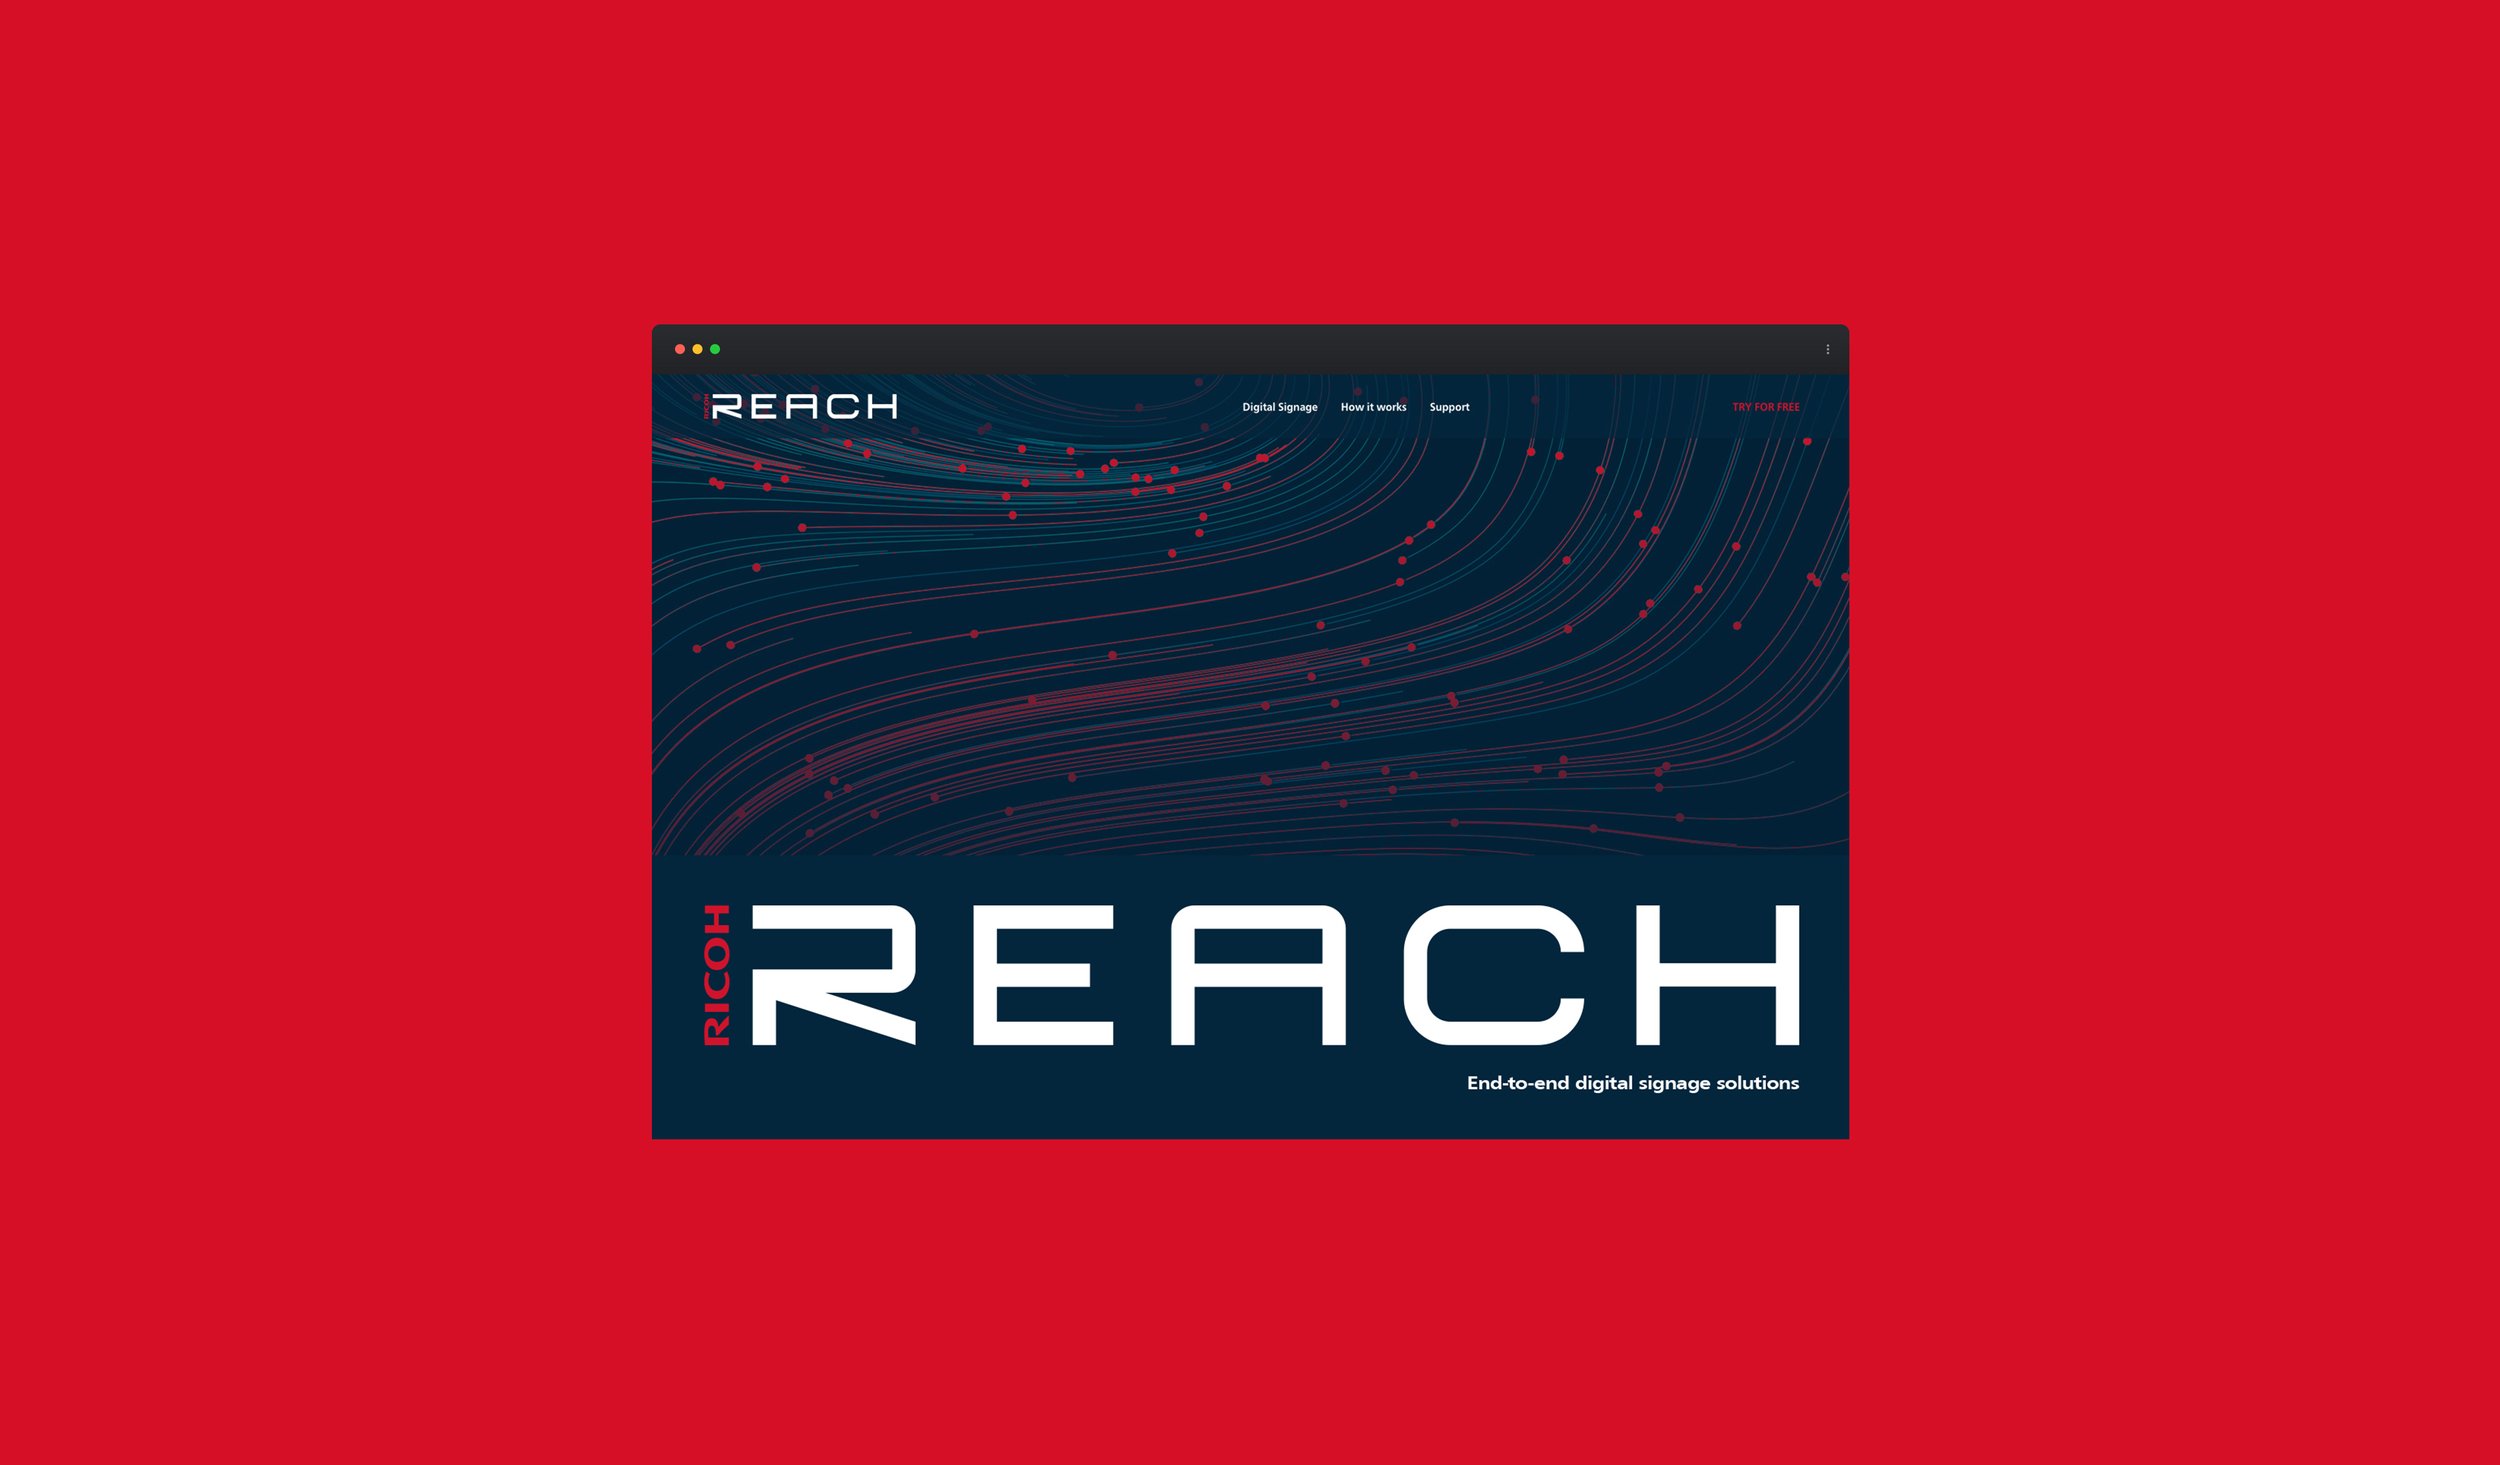 RICOH REACH